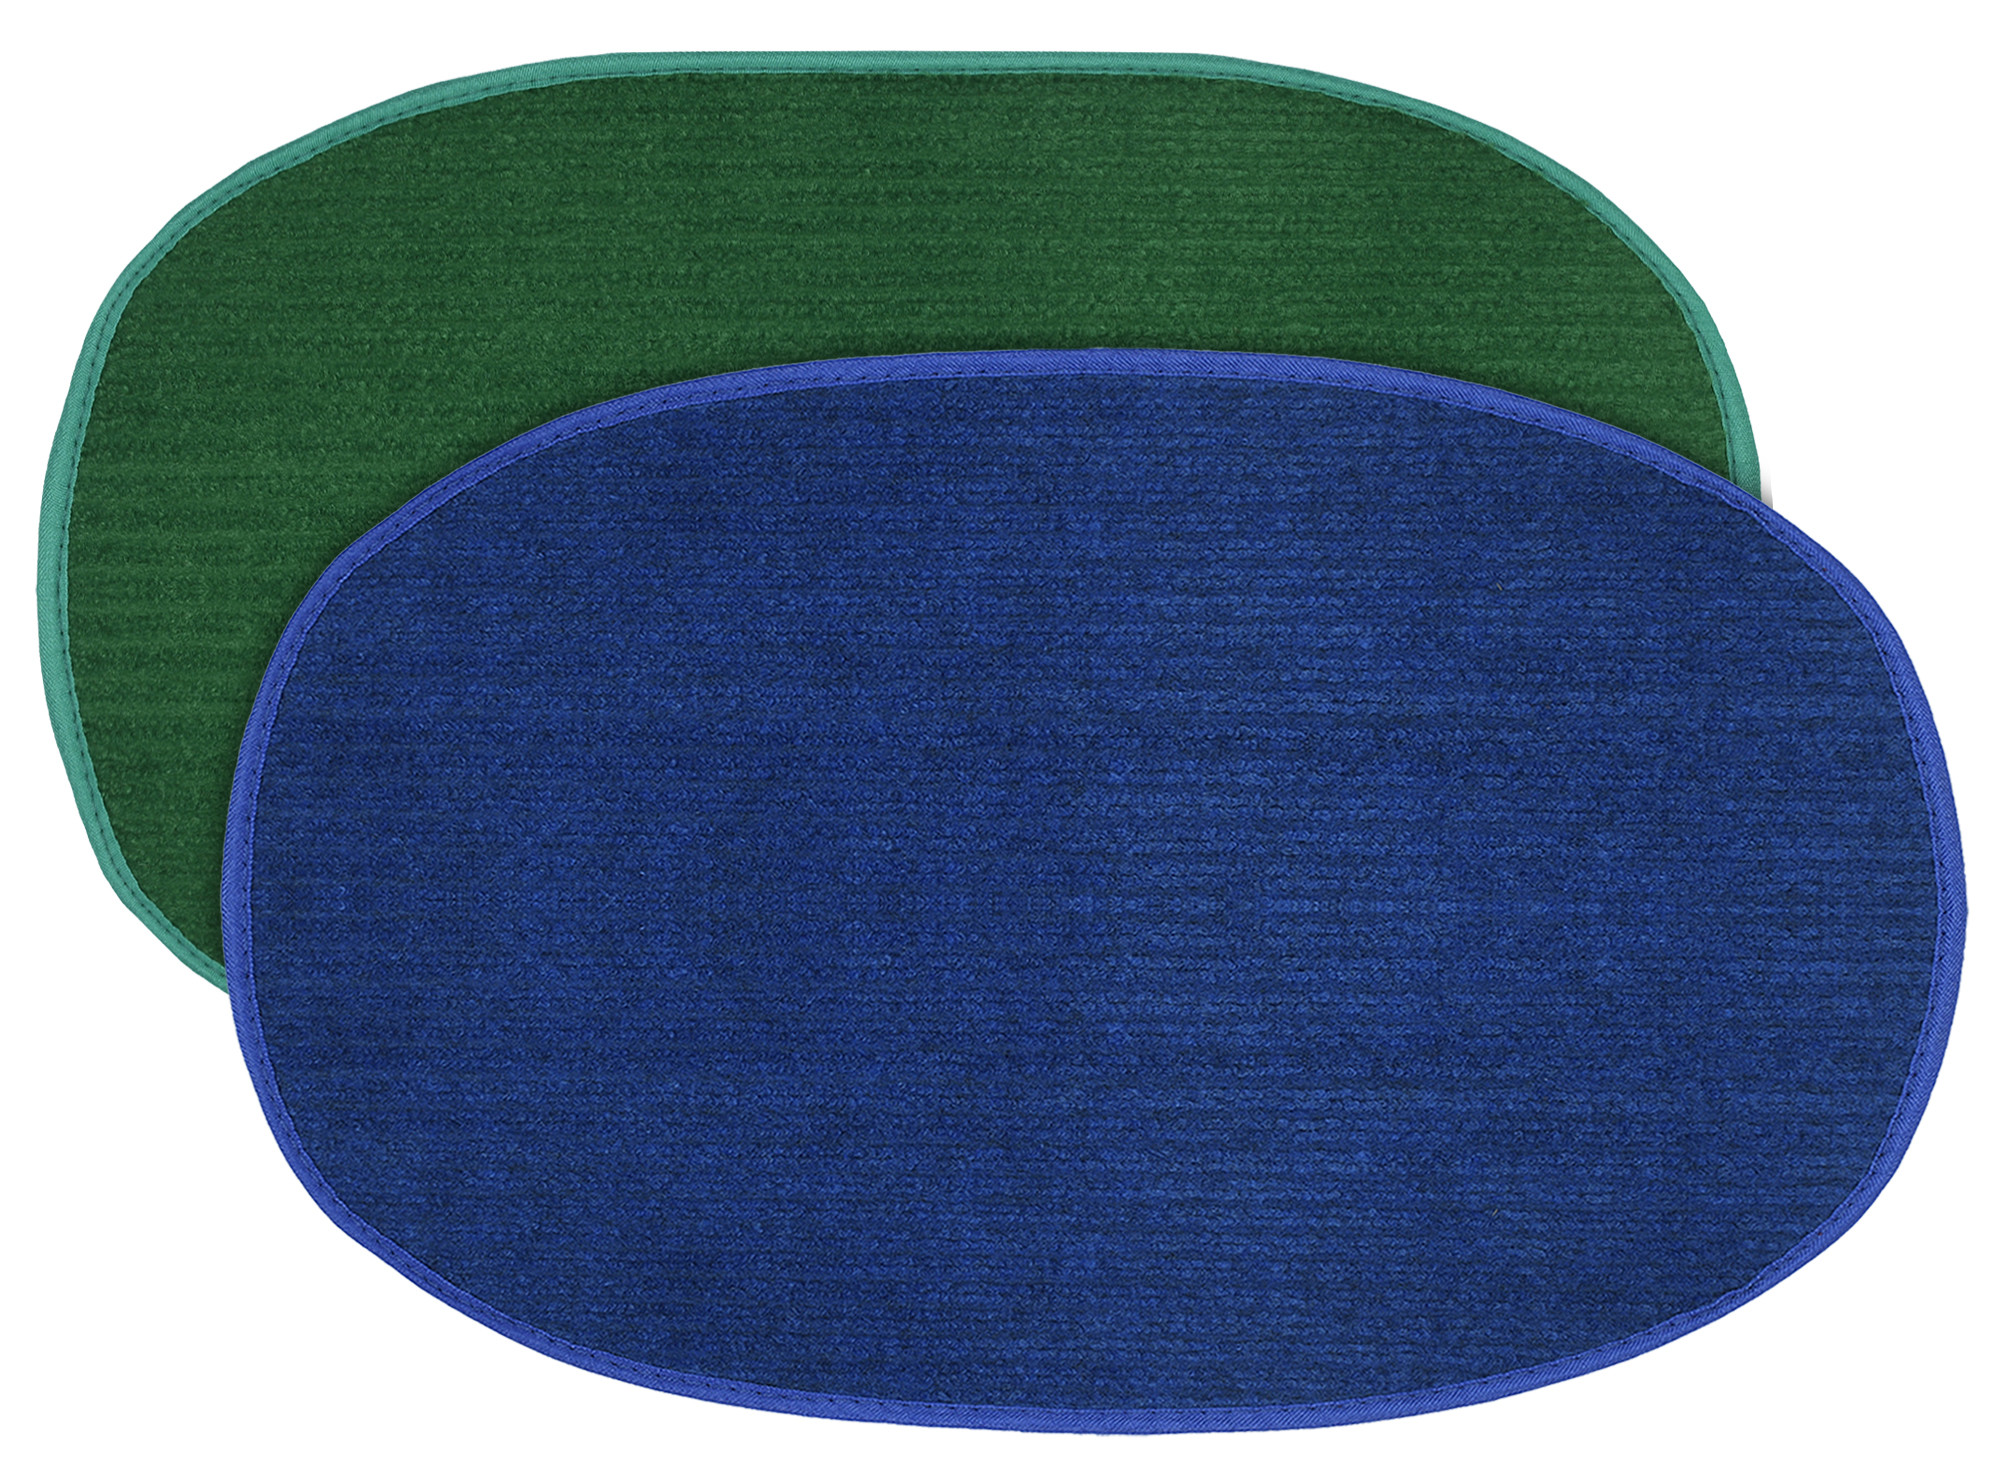 Kuber Industries Oval Shape Durable Microfiber Door Mat, Heavy Duty Doormat, Indoor Outdoor, Easy Clean, Waterproof, Low-Profile Mats for Entry, Patio, Garage (Set Of 2,14'' x 23'',Green & Blue)-KUBMRT12117